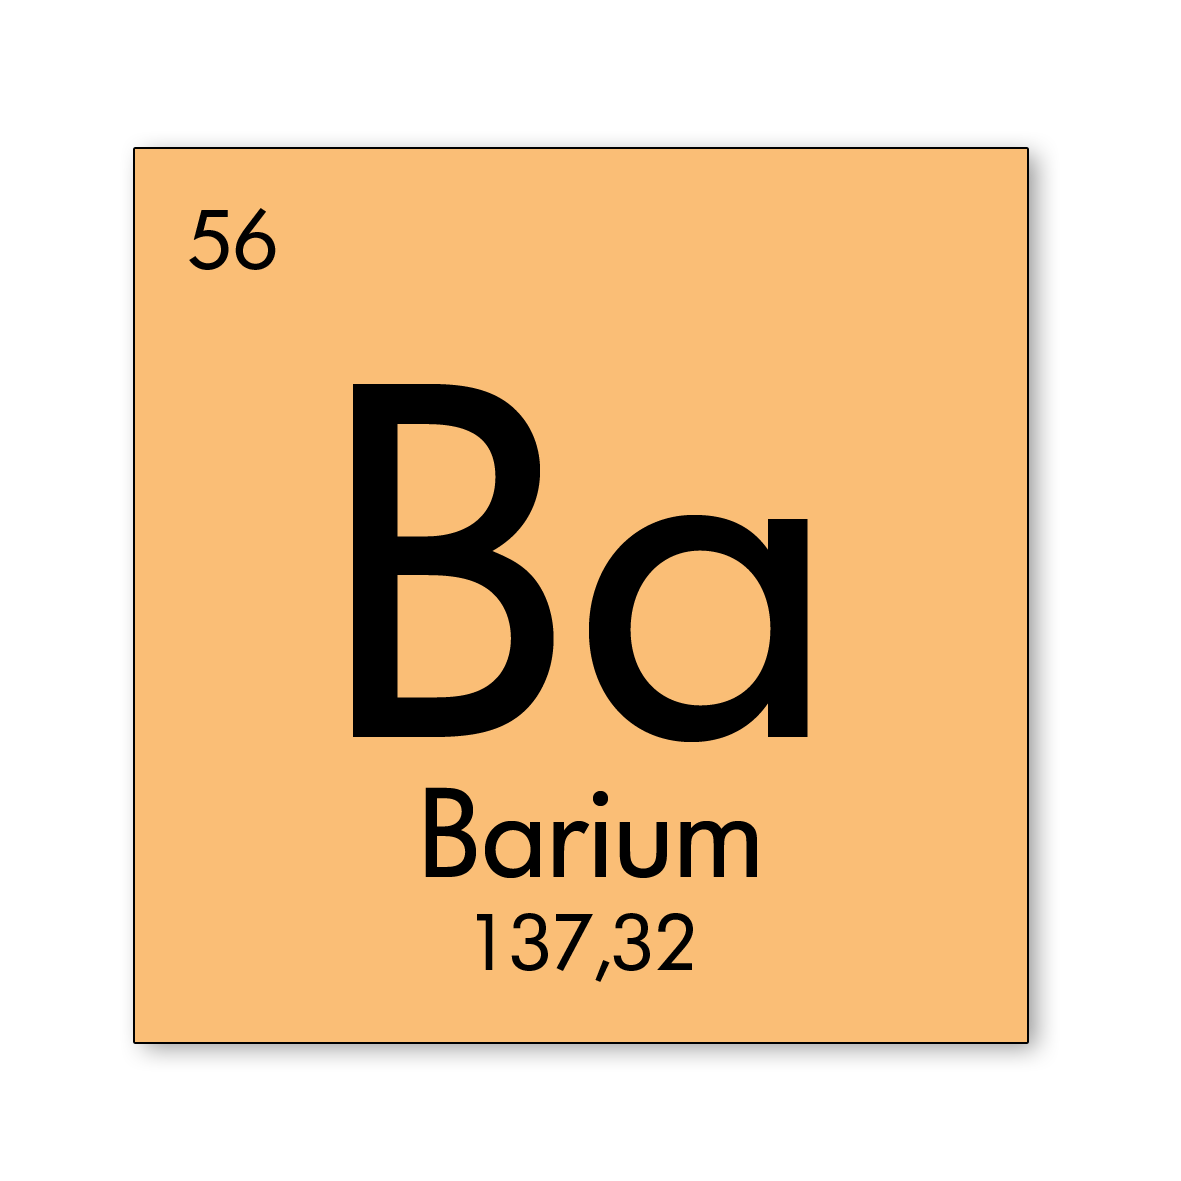 Element barium 07 2018 2